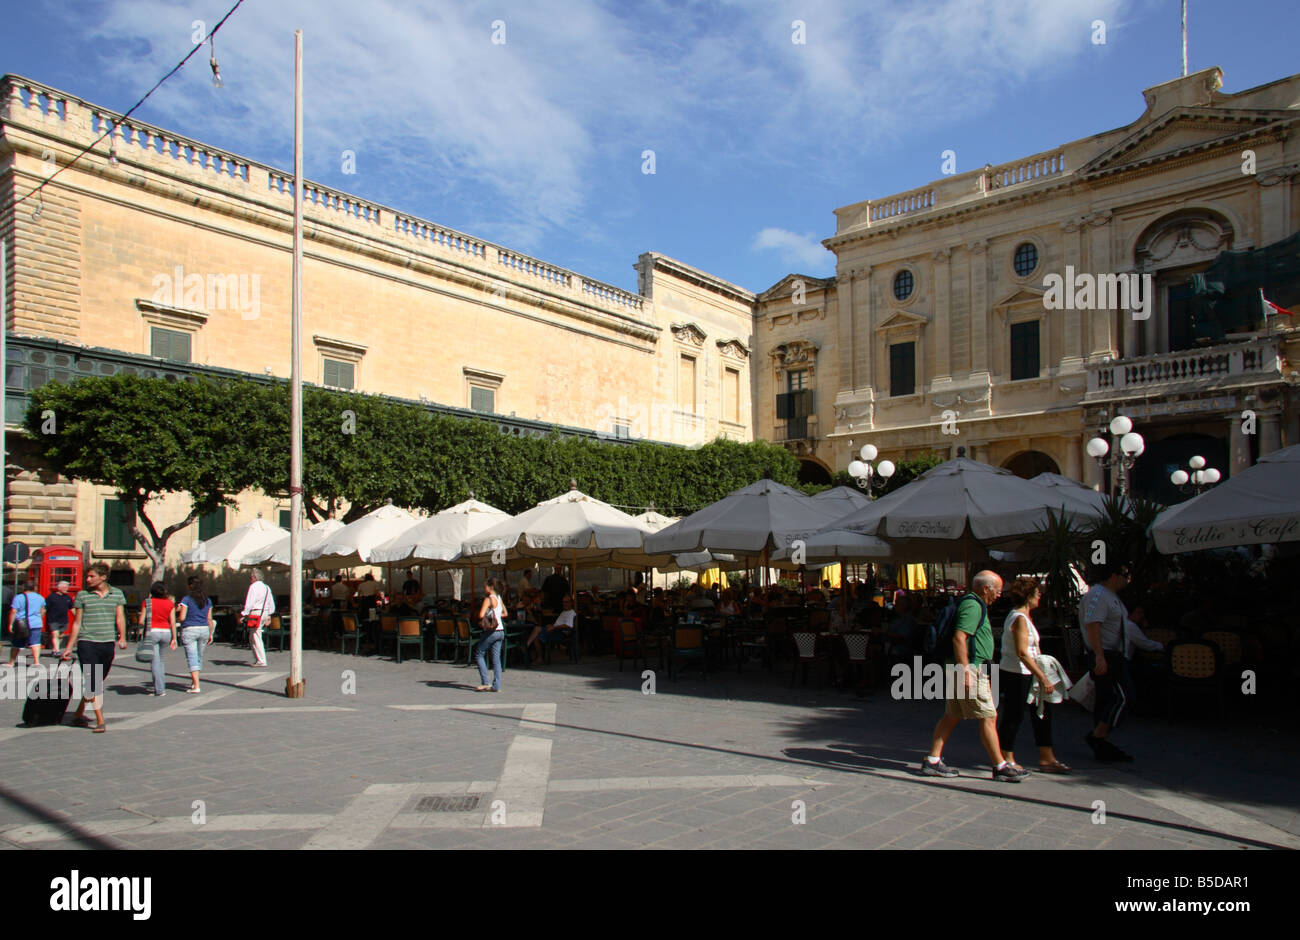 The 'Cafe Cordina' in 'Republic Square' Valletta, Malta. Stock Photo